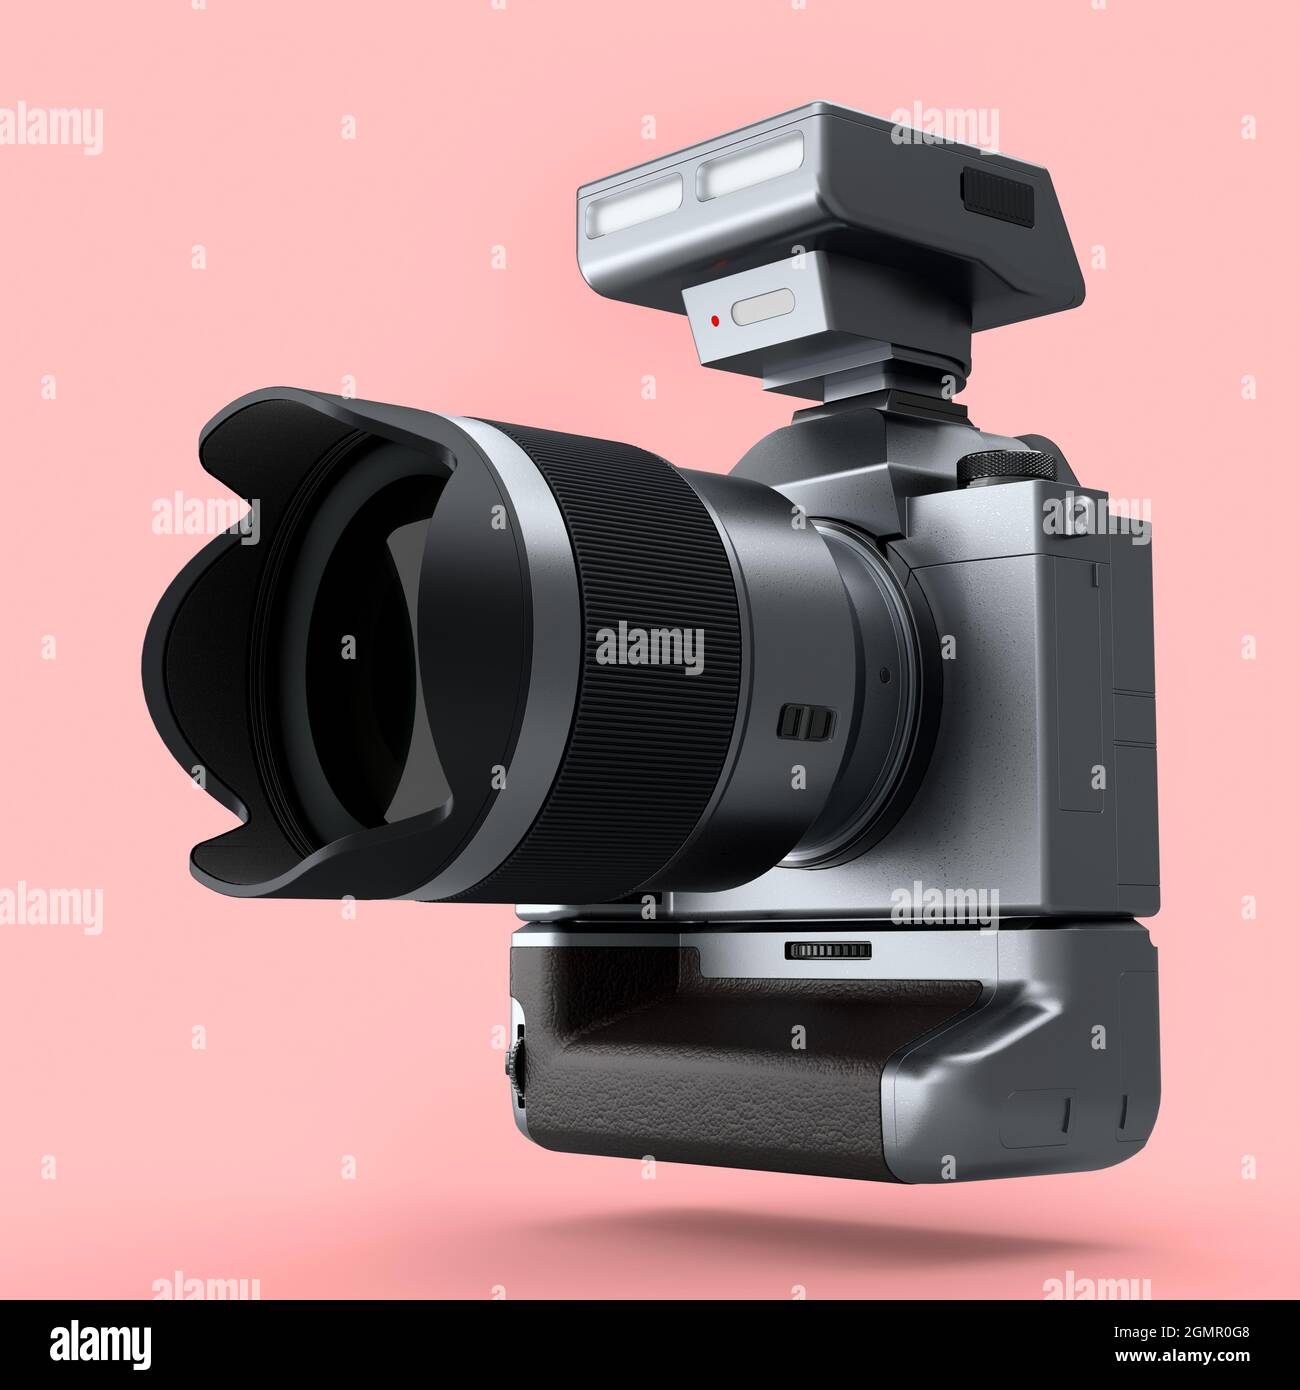 Concetto di inesistente fotocamera DSLR argento con obiettivo e flash esterno speedlight isolato su sfondo rosa. Rendering 3D di fotografie professionali Foto Stock